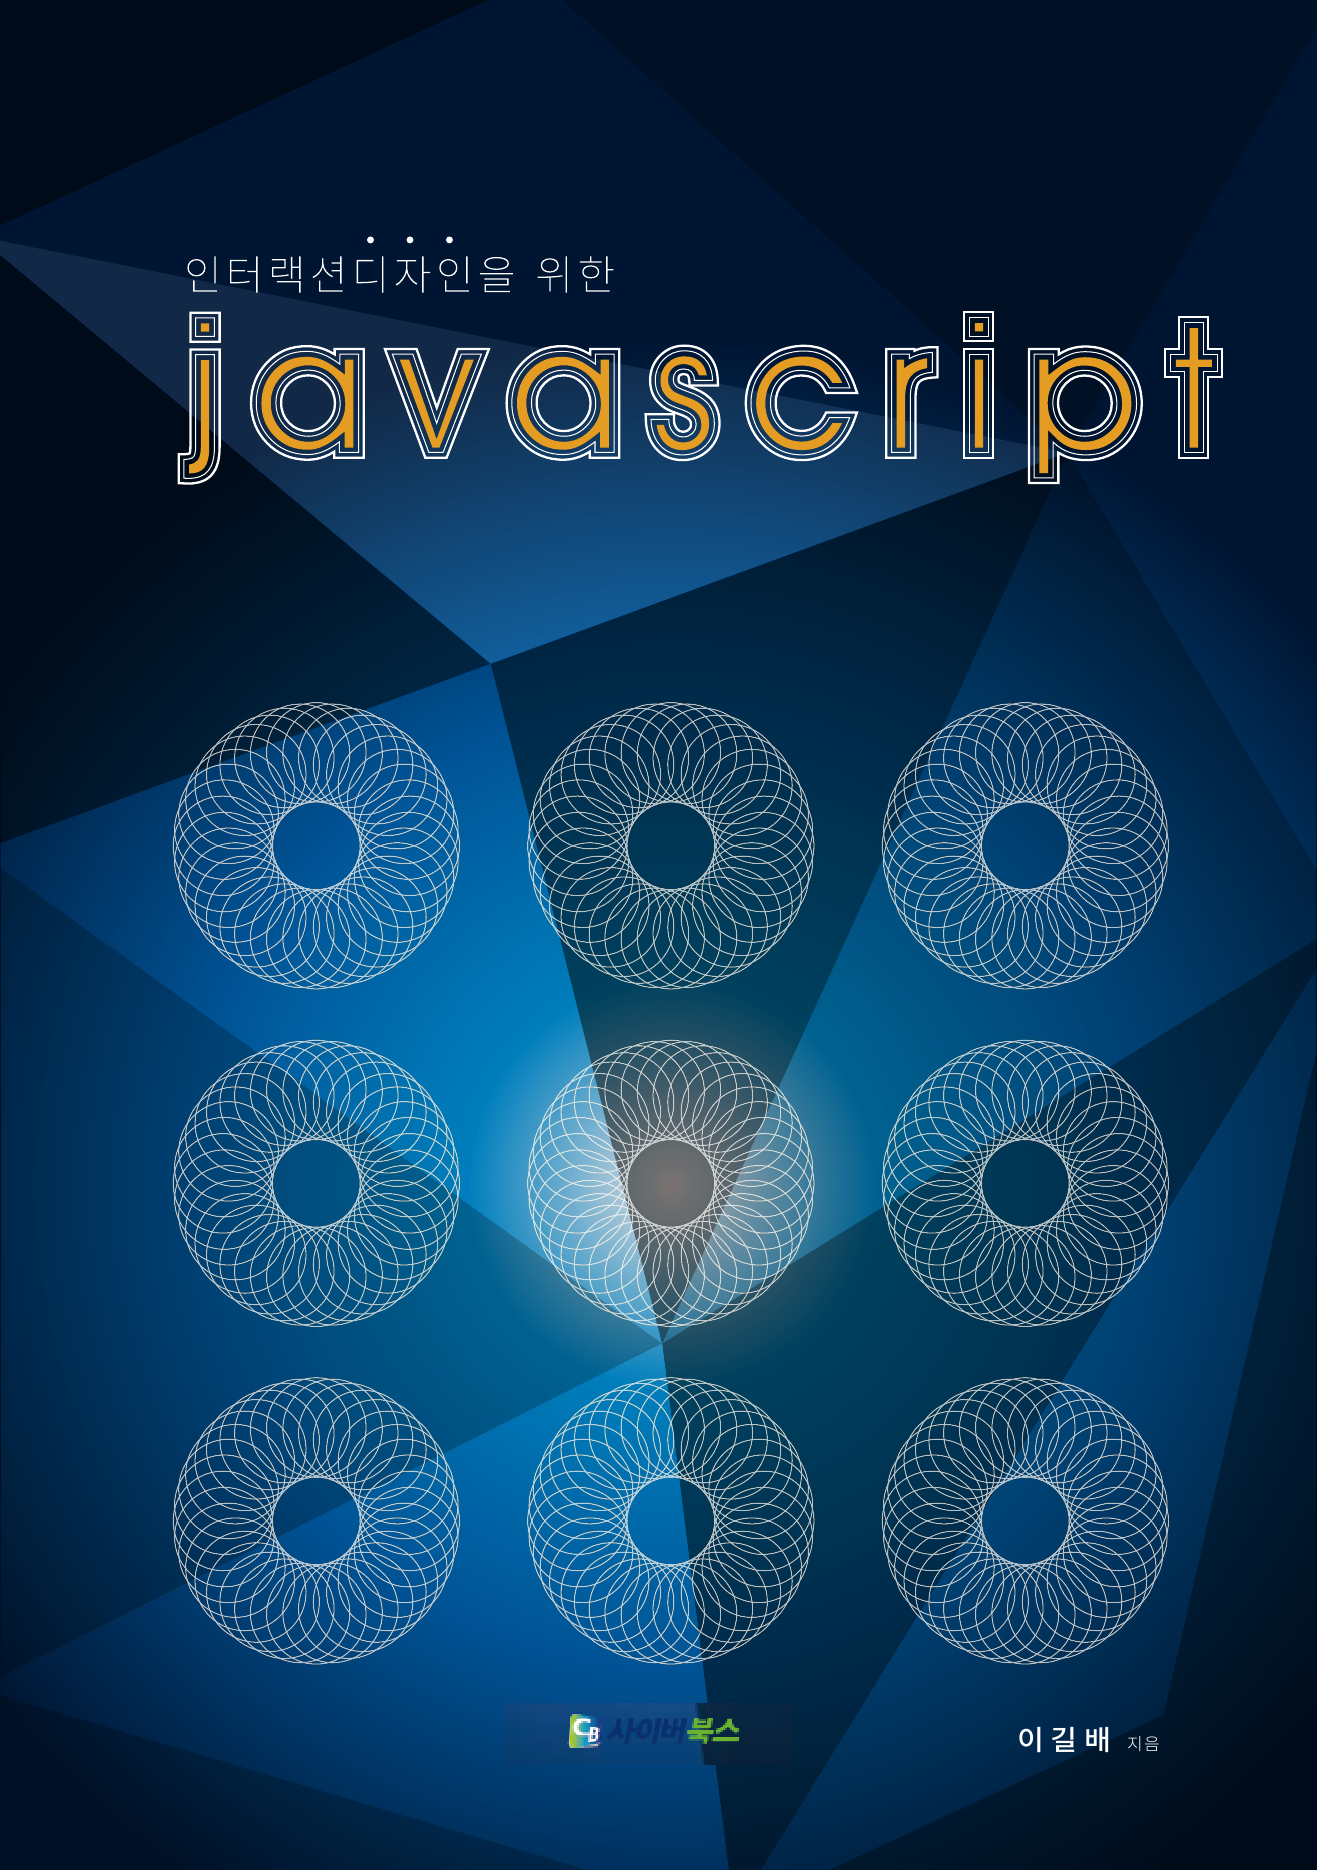 인터랙션디자인을 위한 Java Script